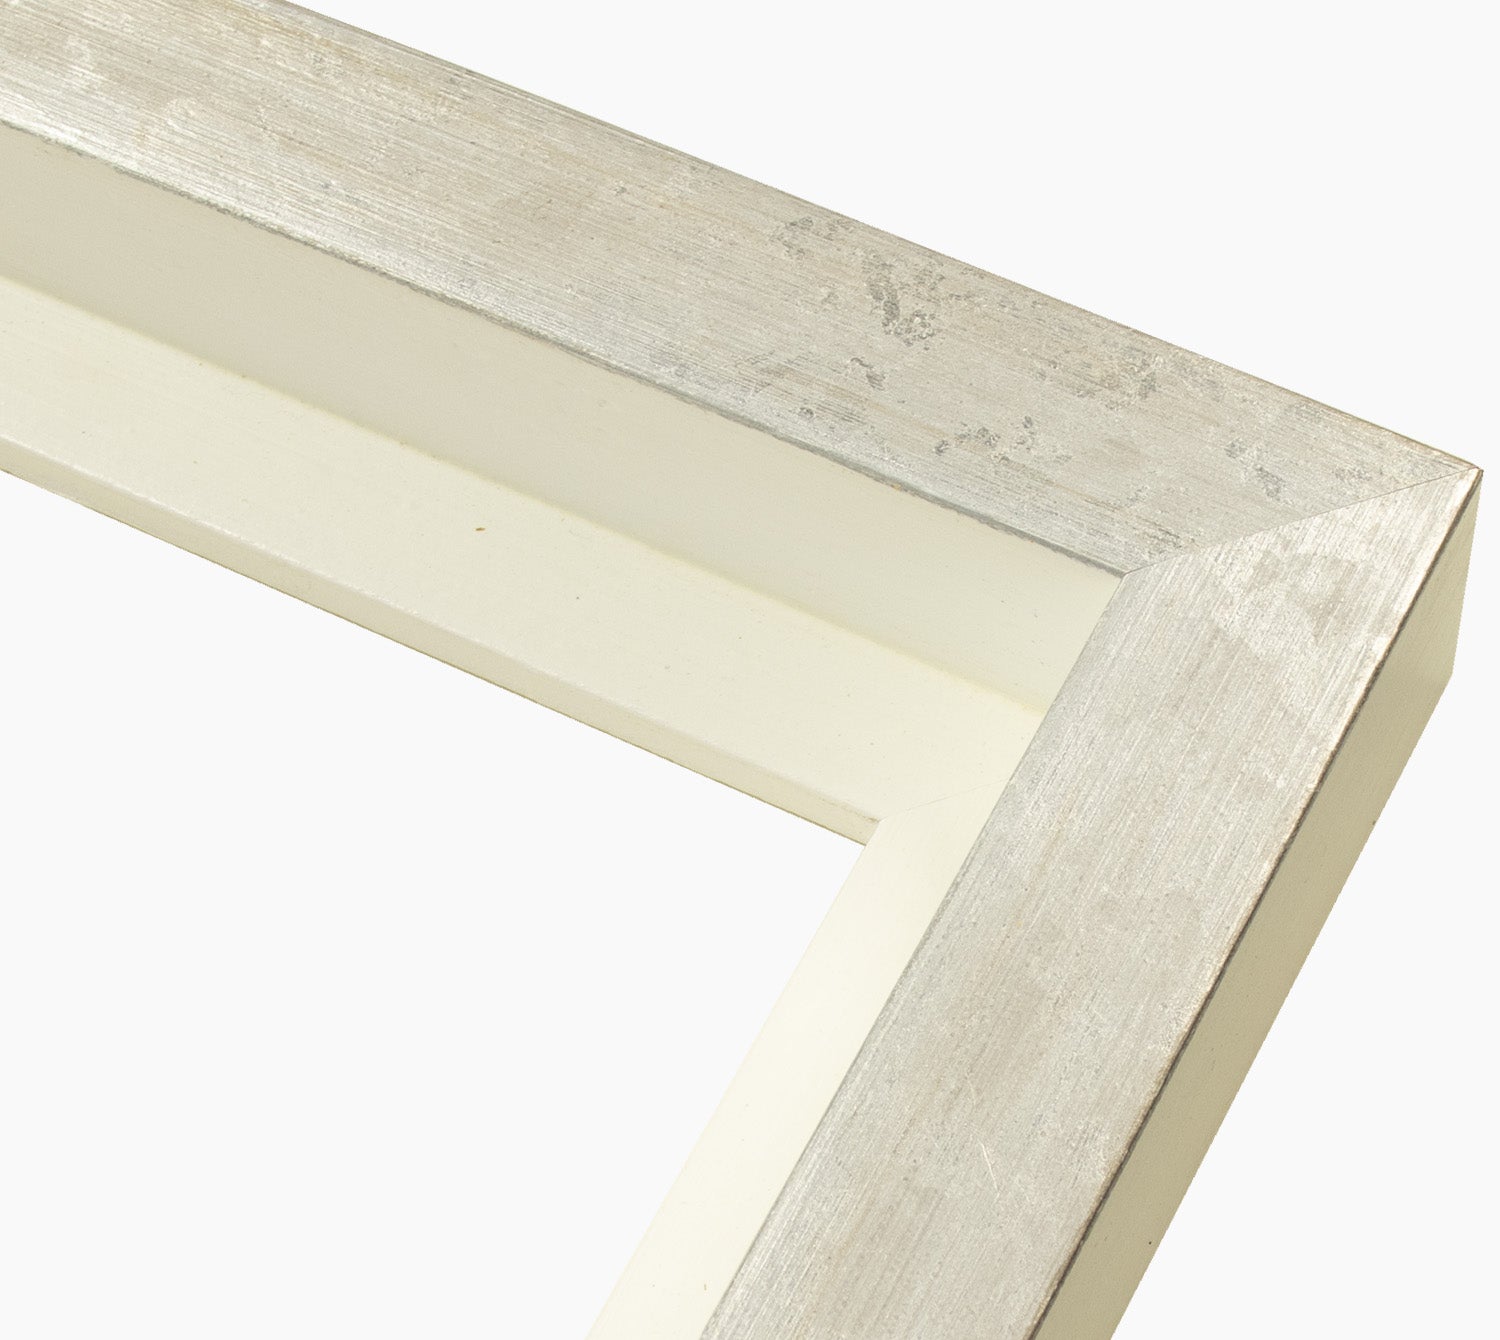 605.7997 cadre en bois blanc et argent mesure de profil 60x55 mm Lombarda cornici S.n.c.